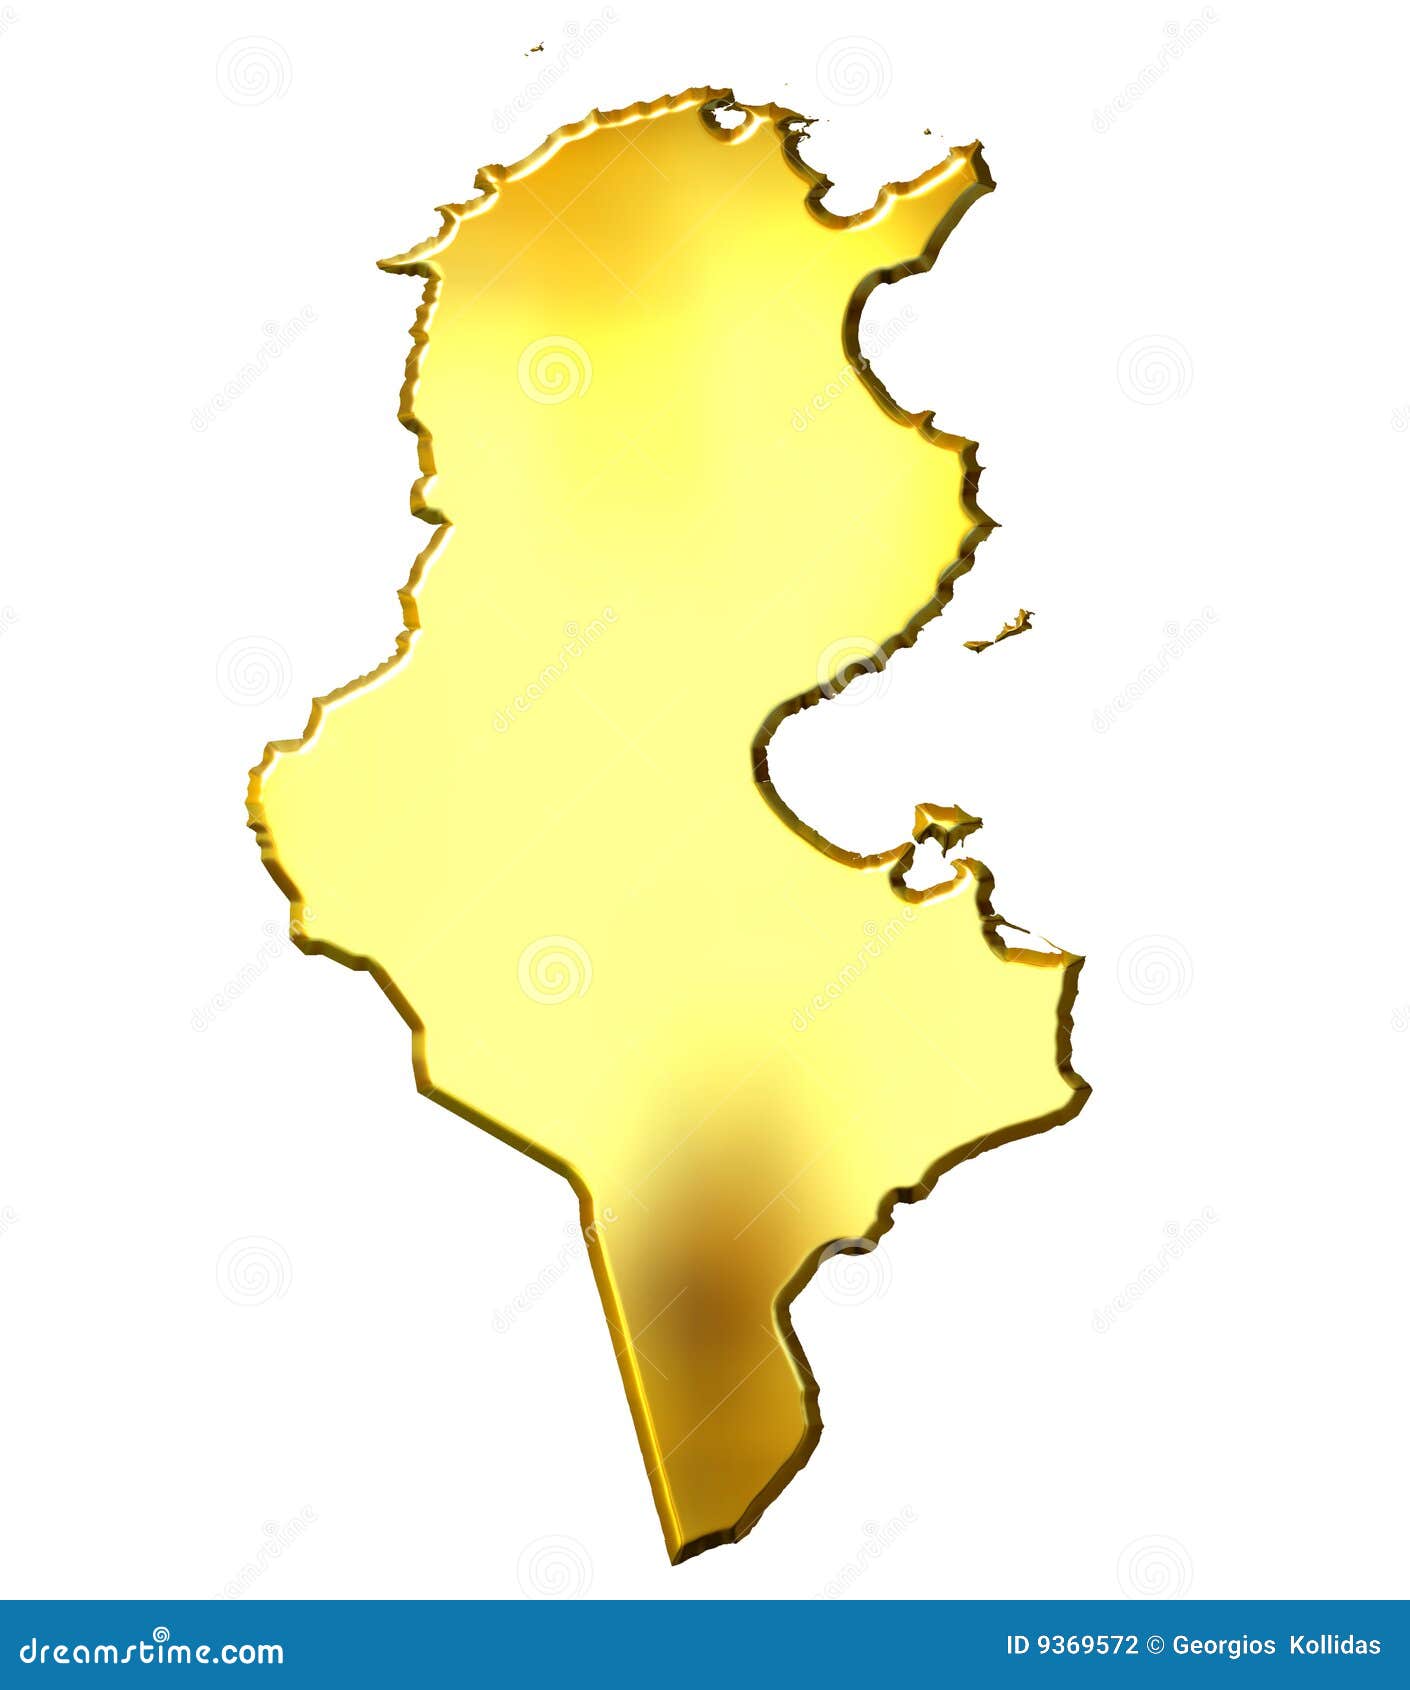 Goldene Karte Tunesien 3d Stock Abbildung Illustration Von Ikone 9369572